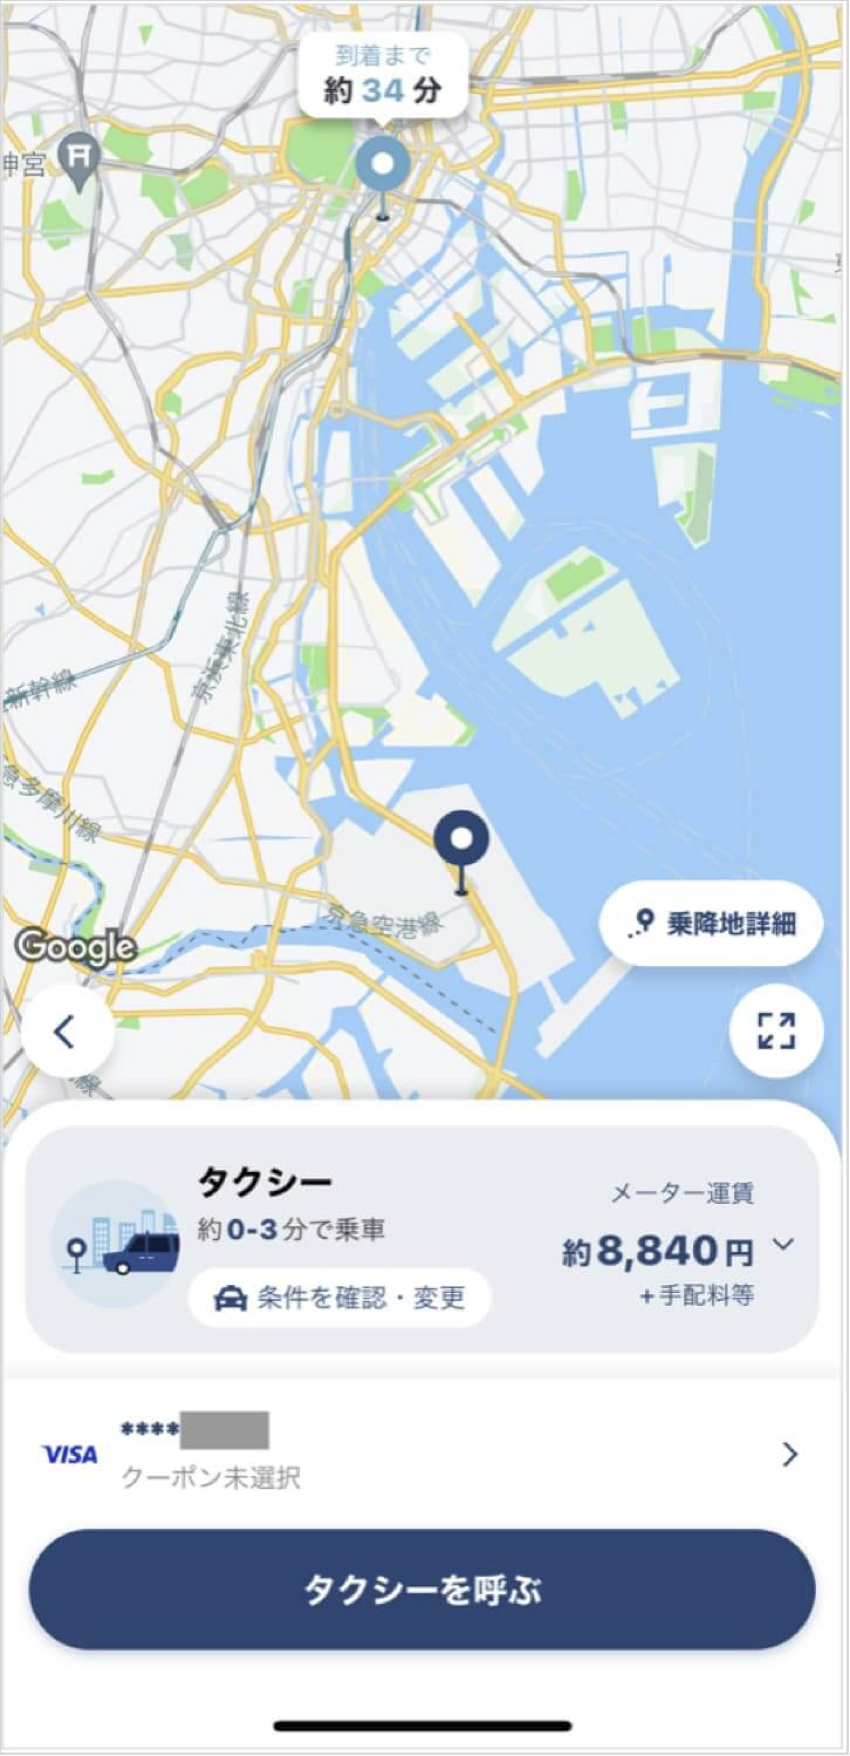 羽田空港から銀座までのタクシー料金・所要時間まとめ